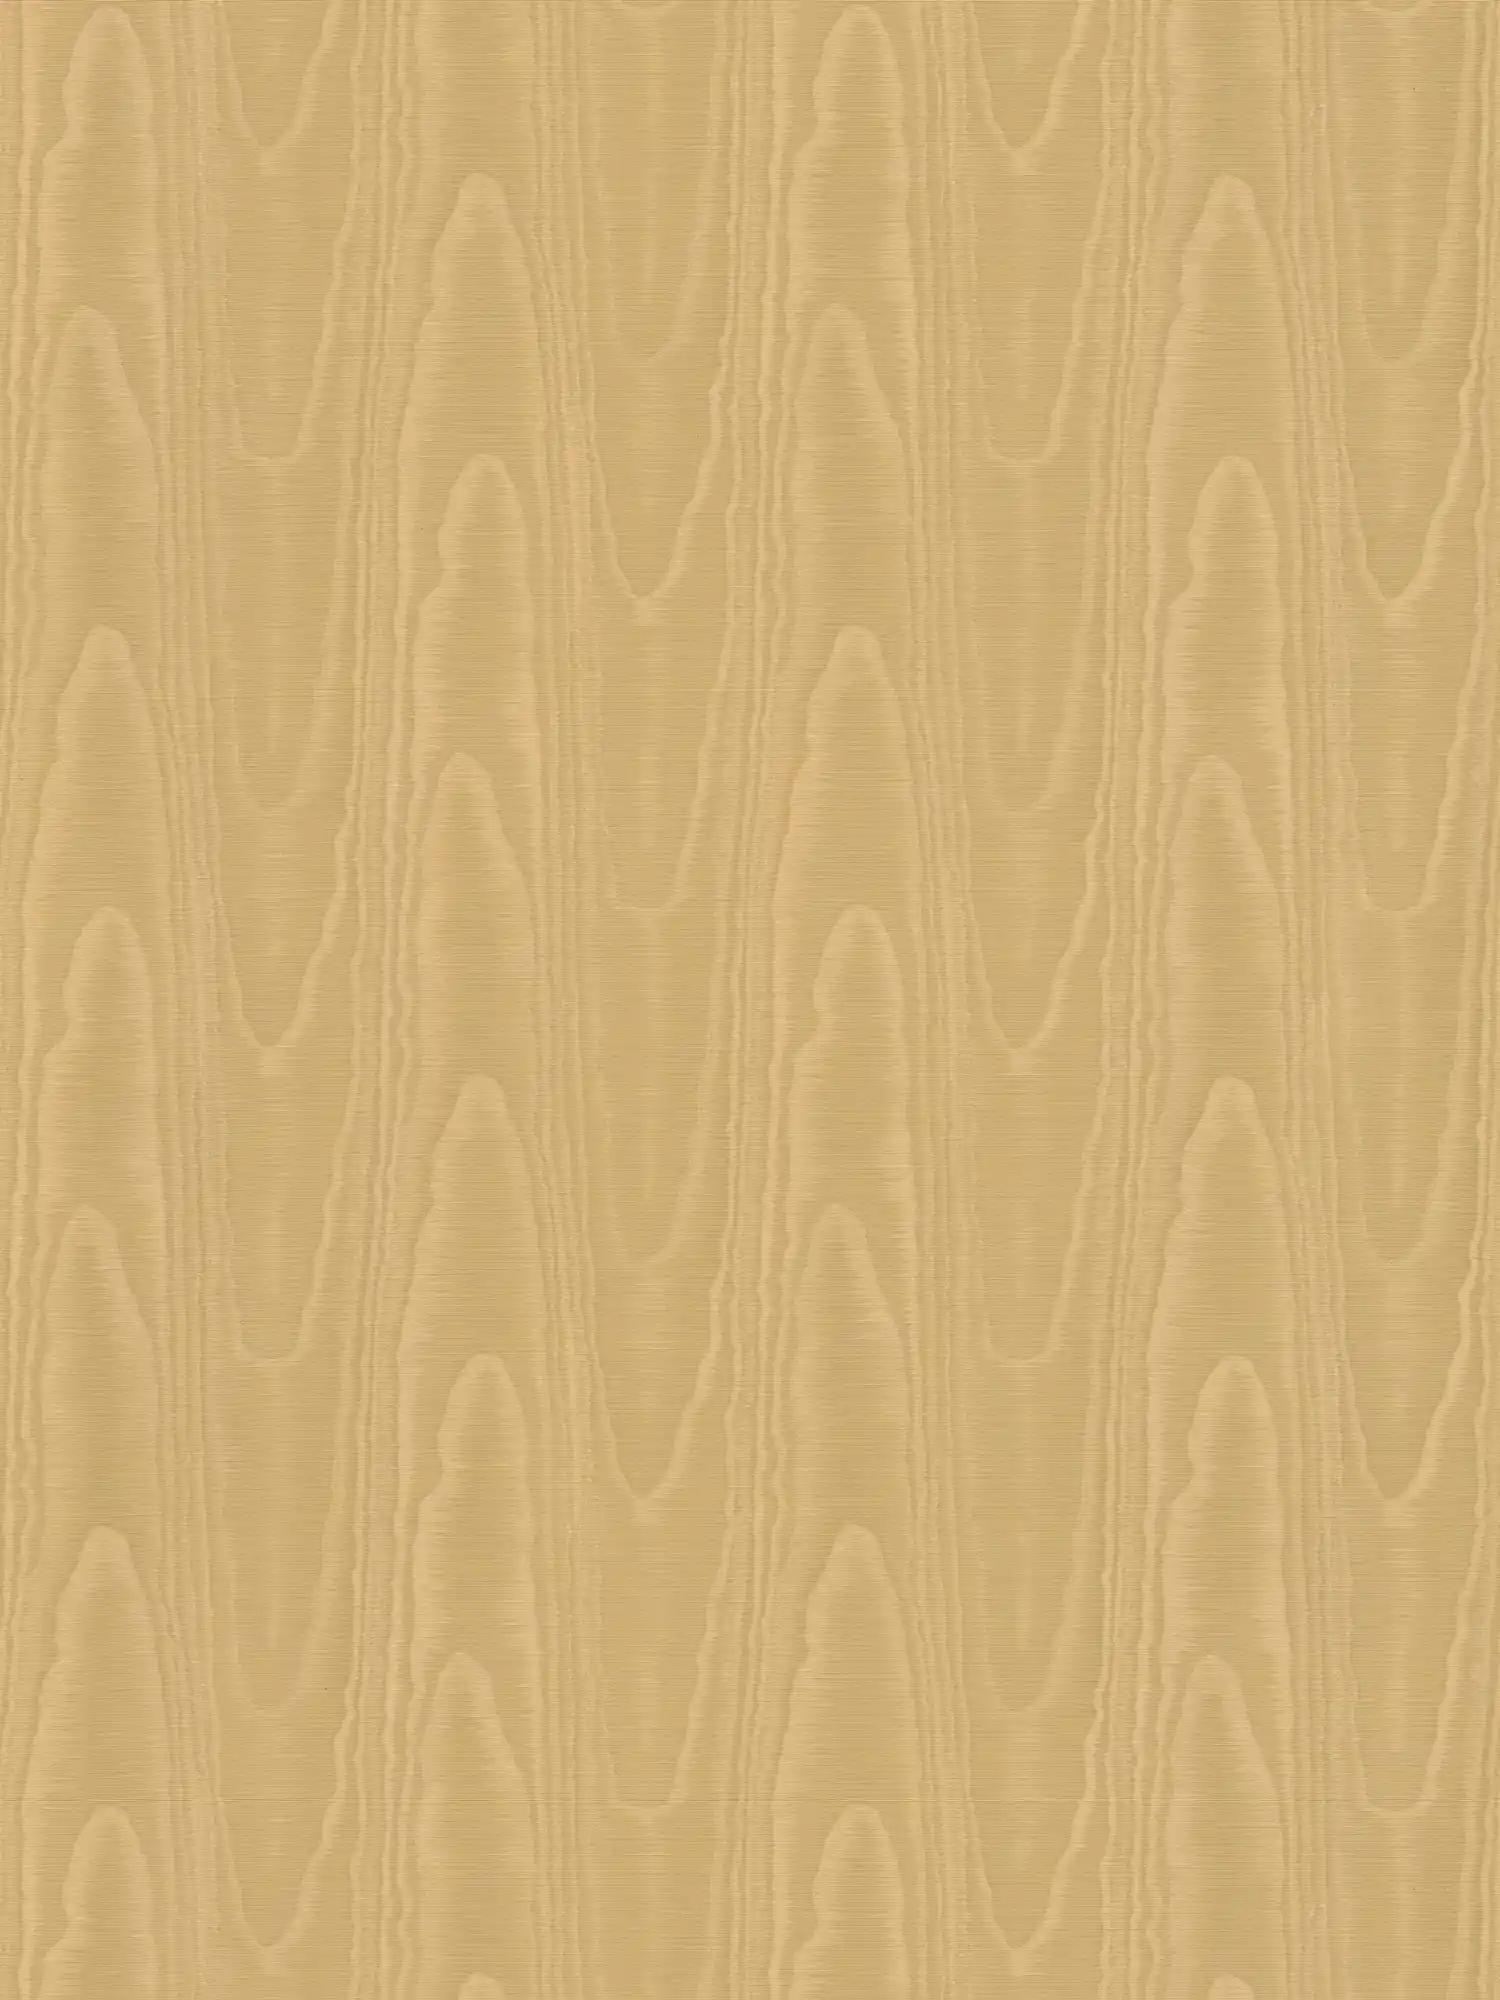 Textielachtig behang met zijdemoiré-effect - bruin, geel
